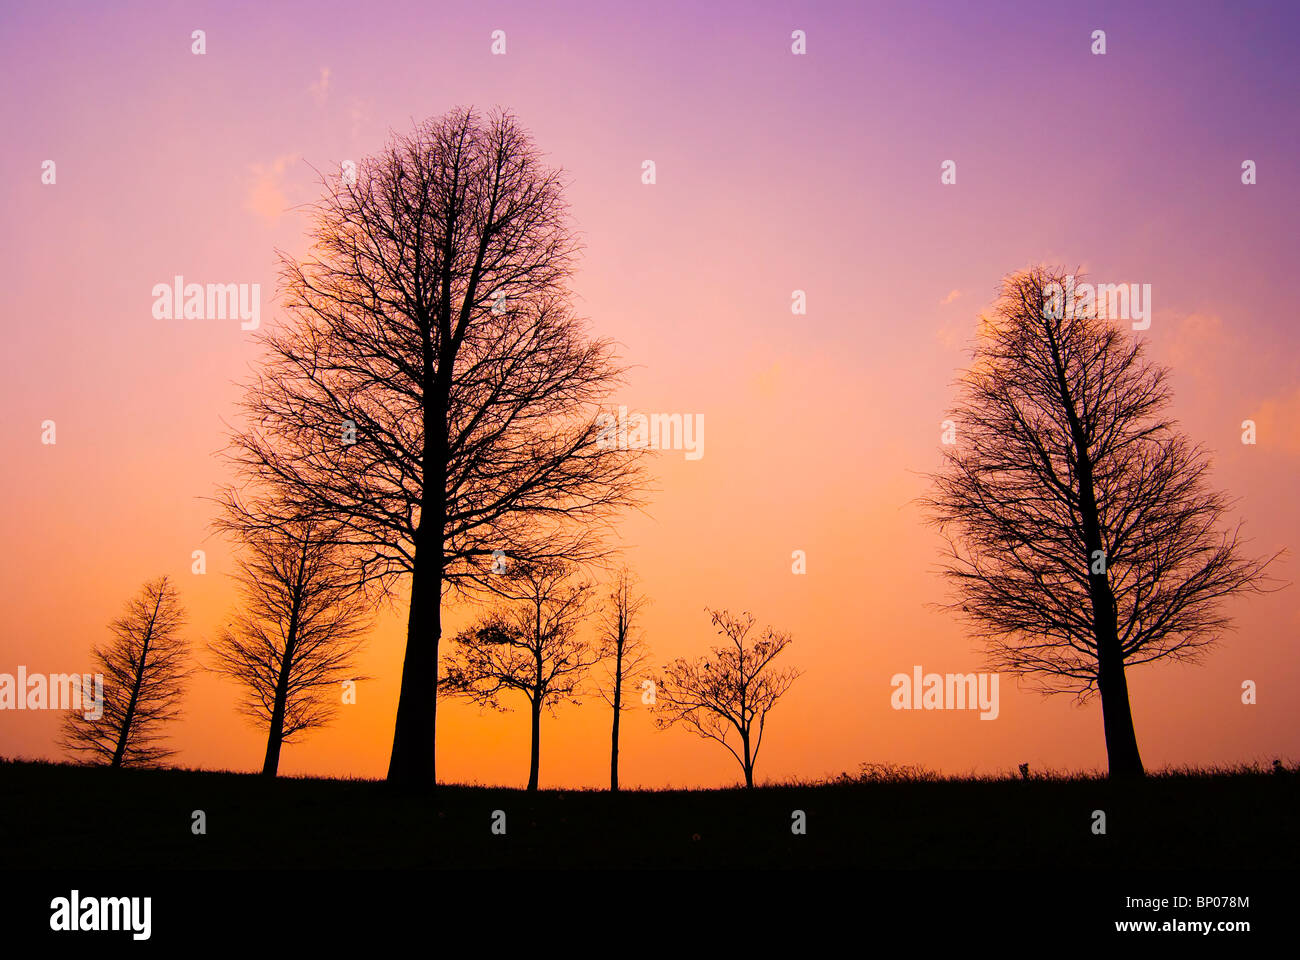 Los árboles en una pacífica noche de invierno, después de la puesta del sol Foto de stock